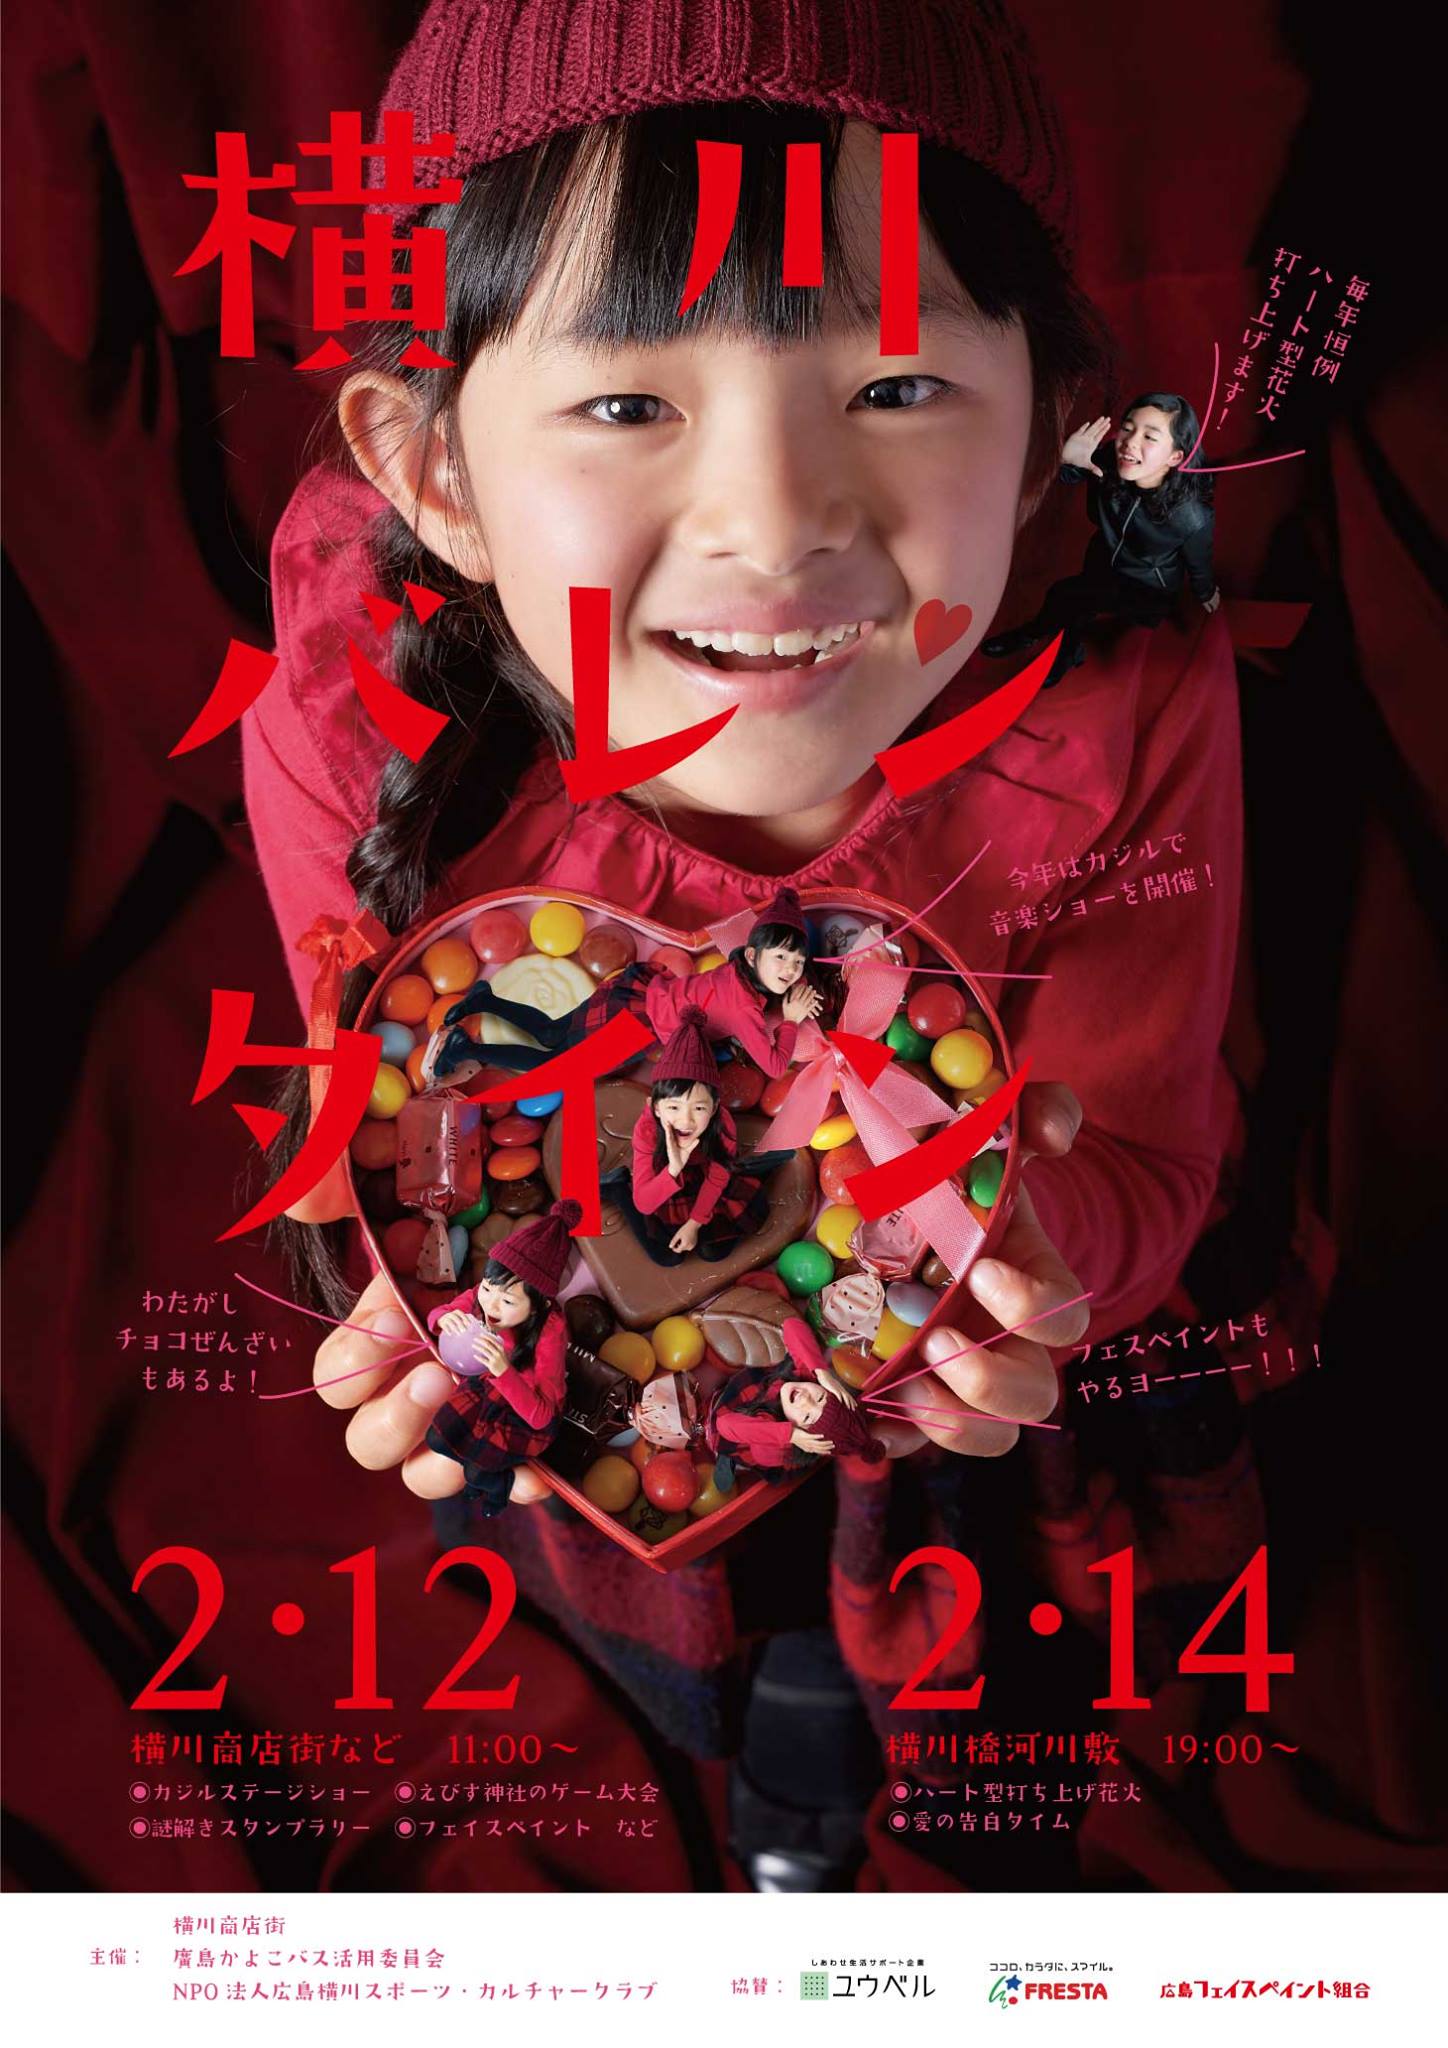 2/12横川かよこバス記念祭・2/14横川バレンタイン開催